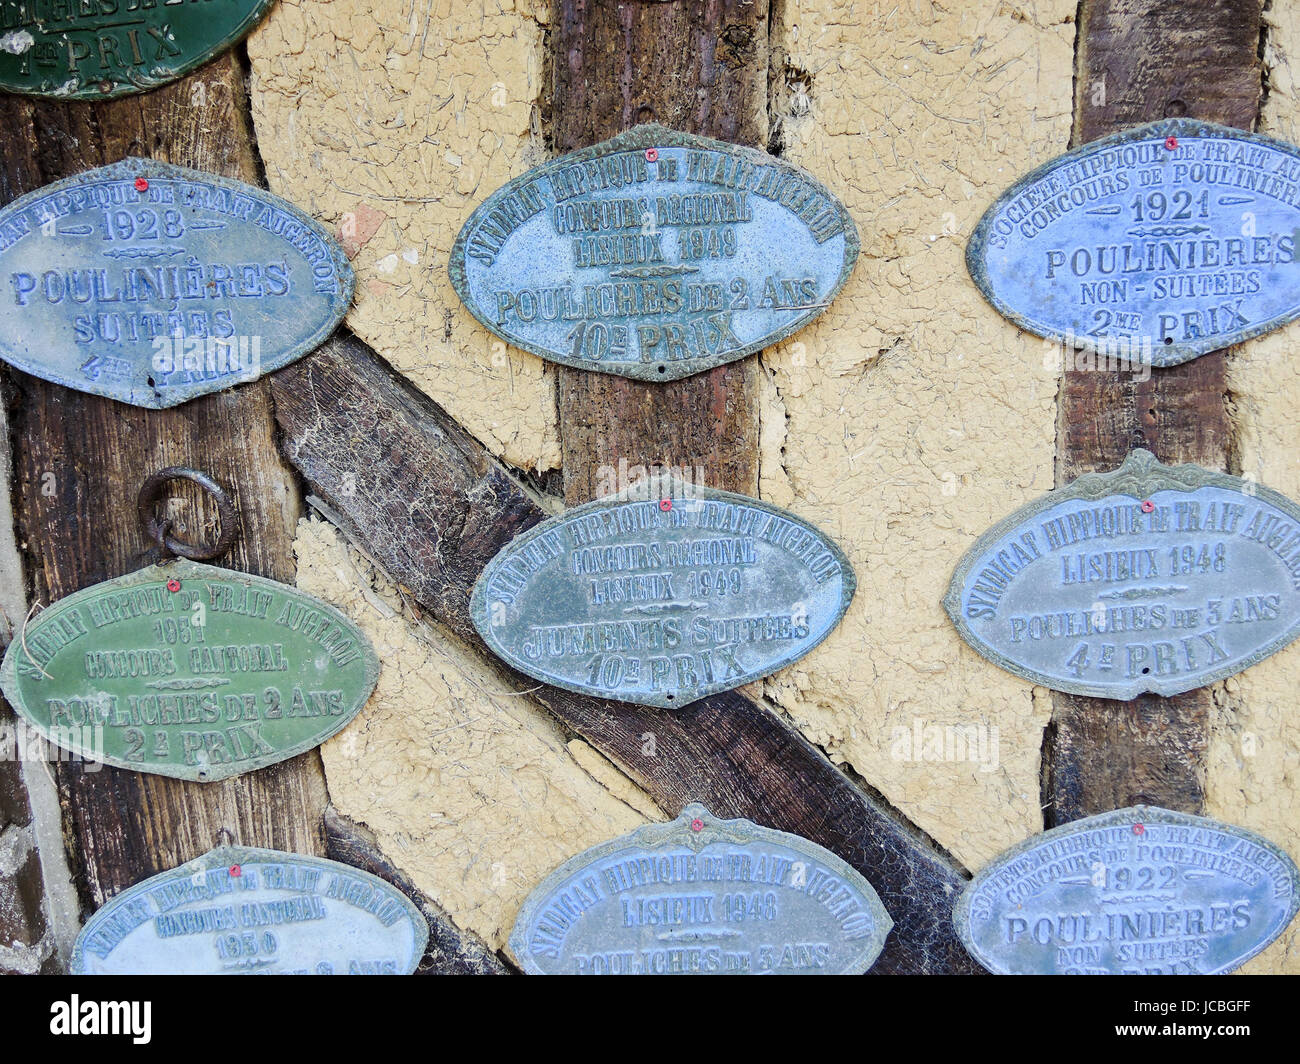 BEUVRON-en-Auge, FRANCE - 6 août 2014 : insignes commémoratifs en l'honneur des réalisations dans les concours les producteurs de cidre à partir de début du xxe siècle sur la Route du cidre de Normandie Banque D'Images